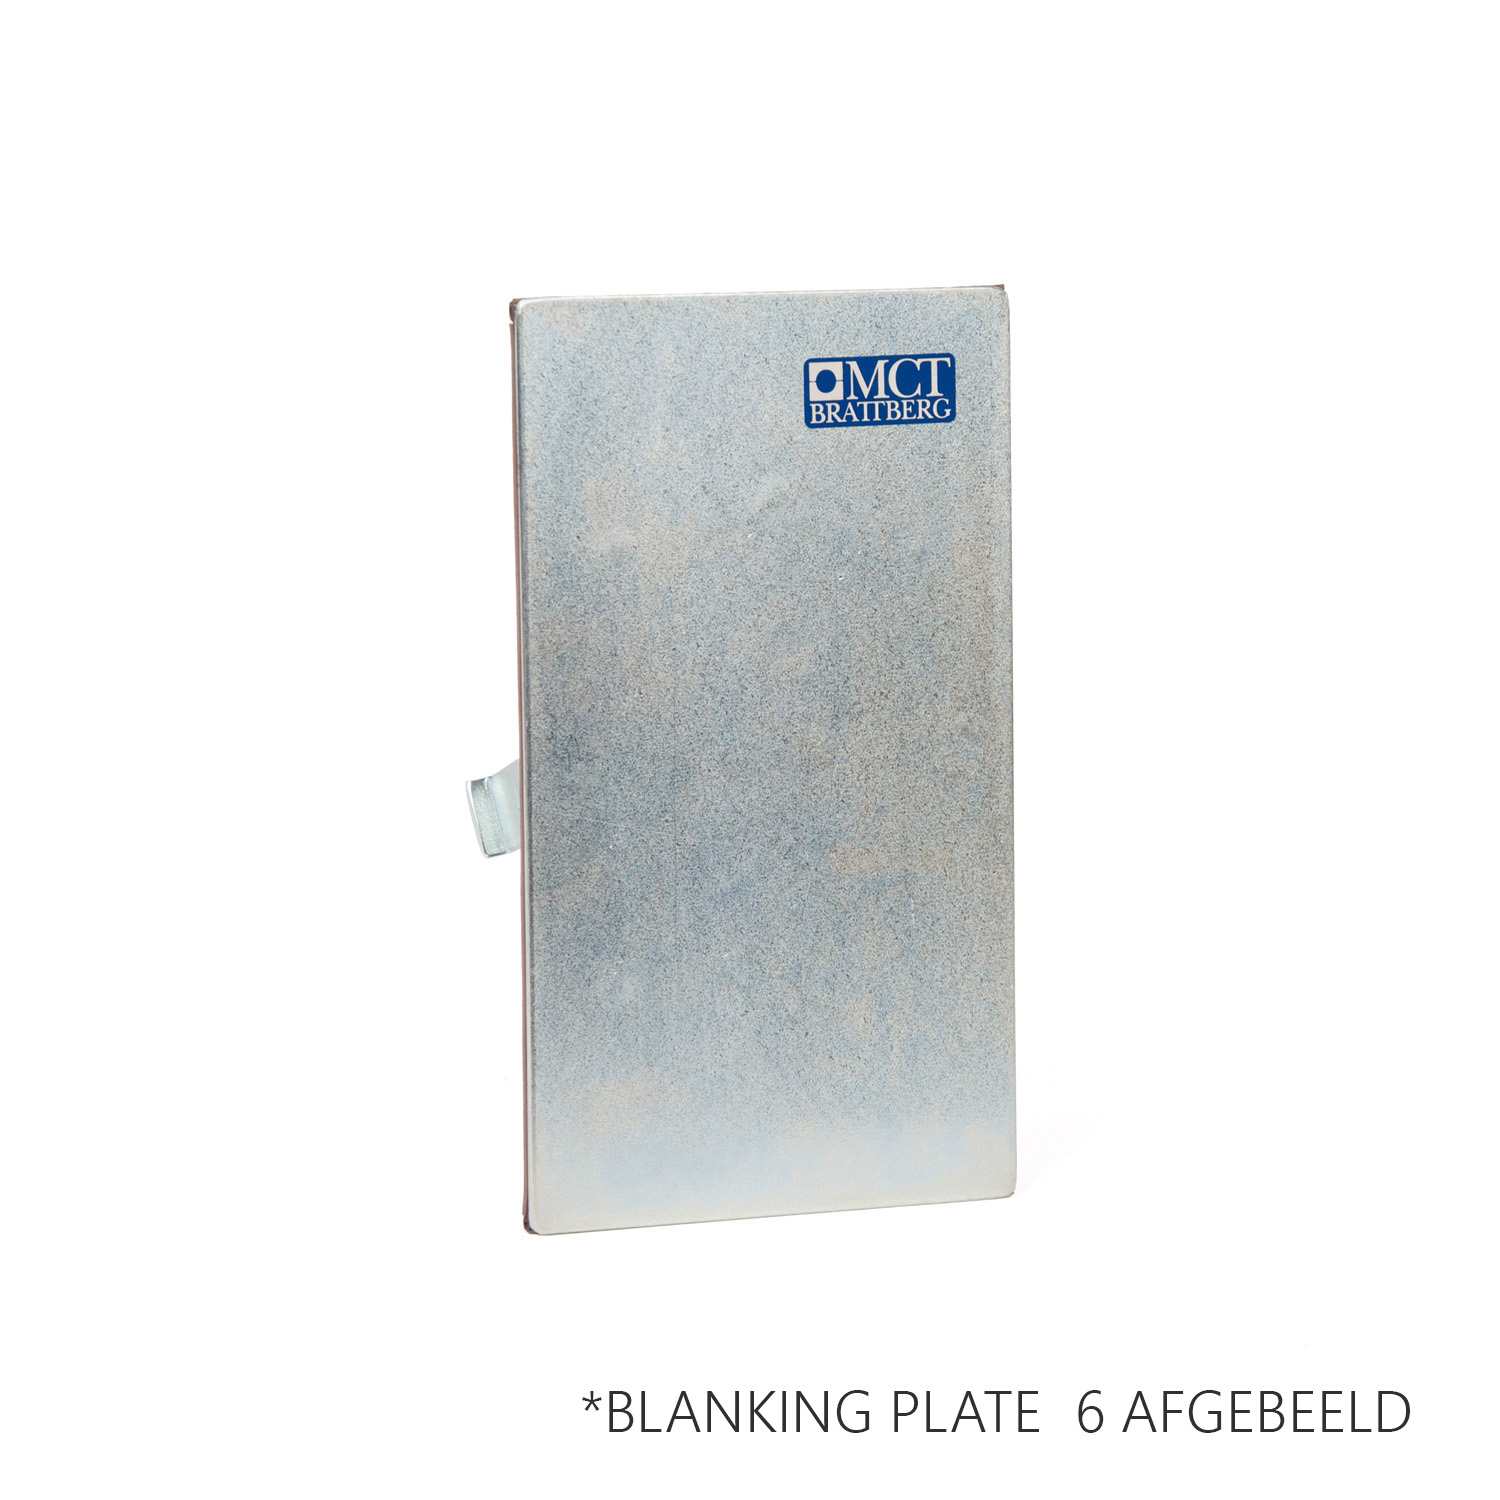 BLANKING PLATE 2 Blanking plate gegalvaniseerd -voor het afdichten van het frame voor de installatie.